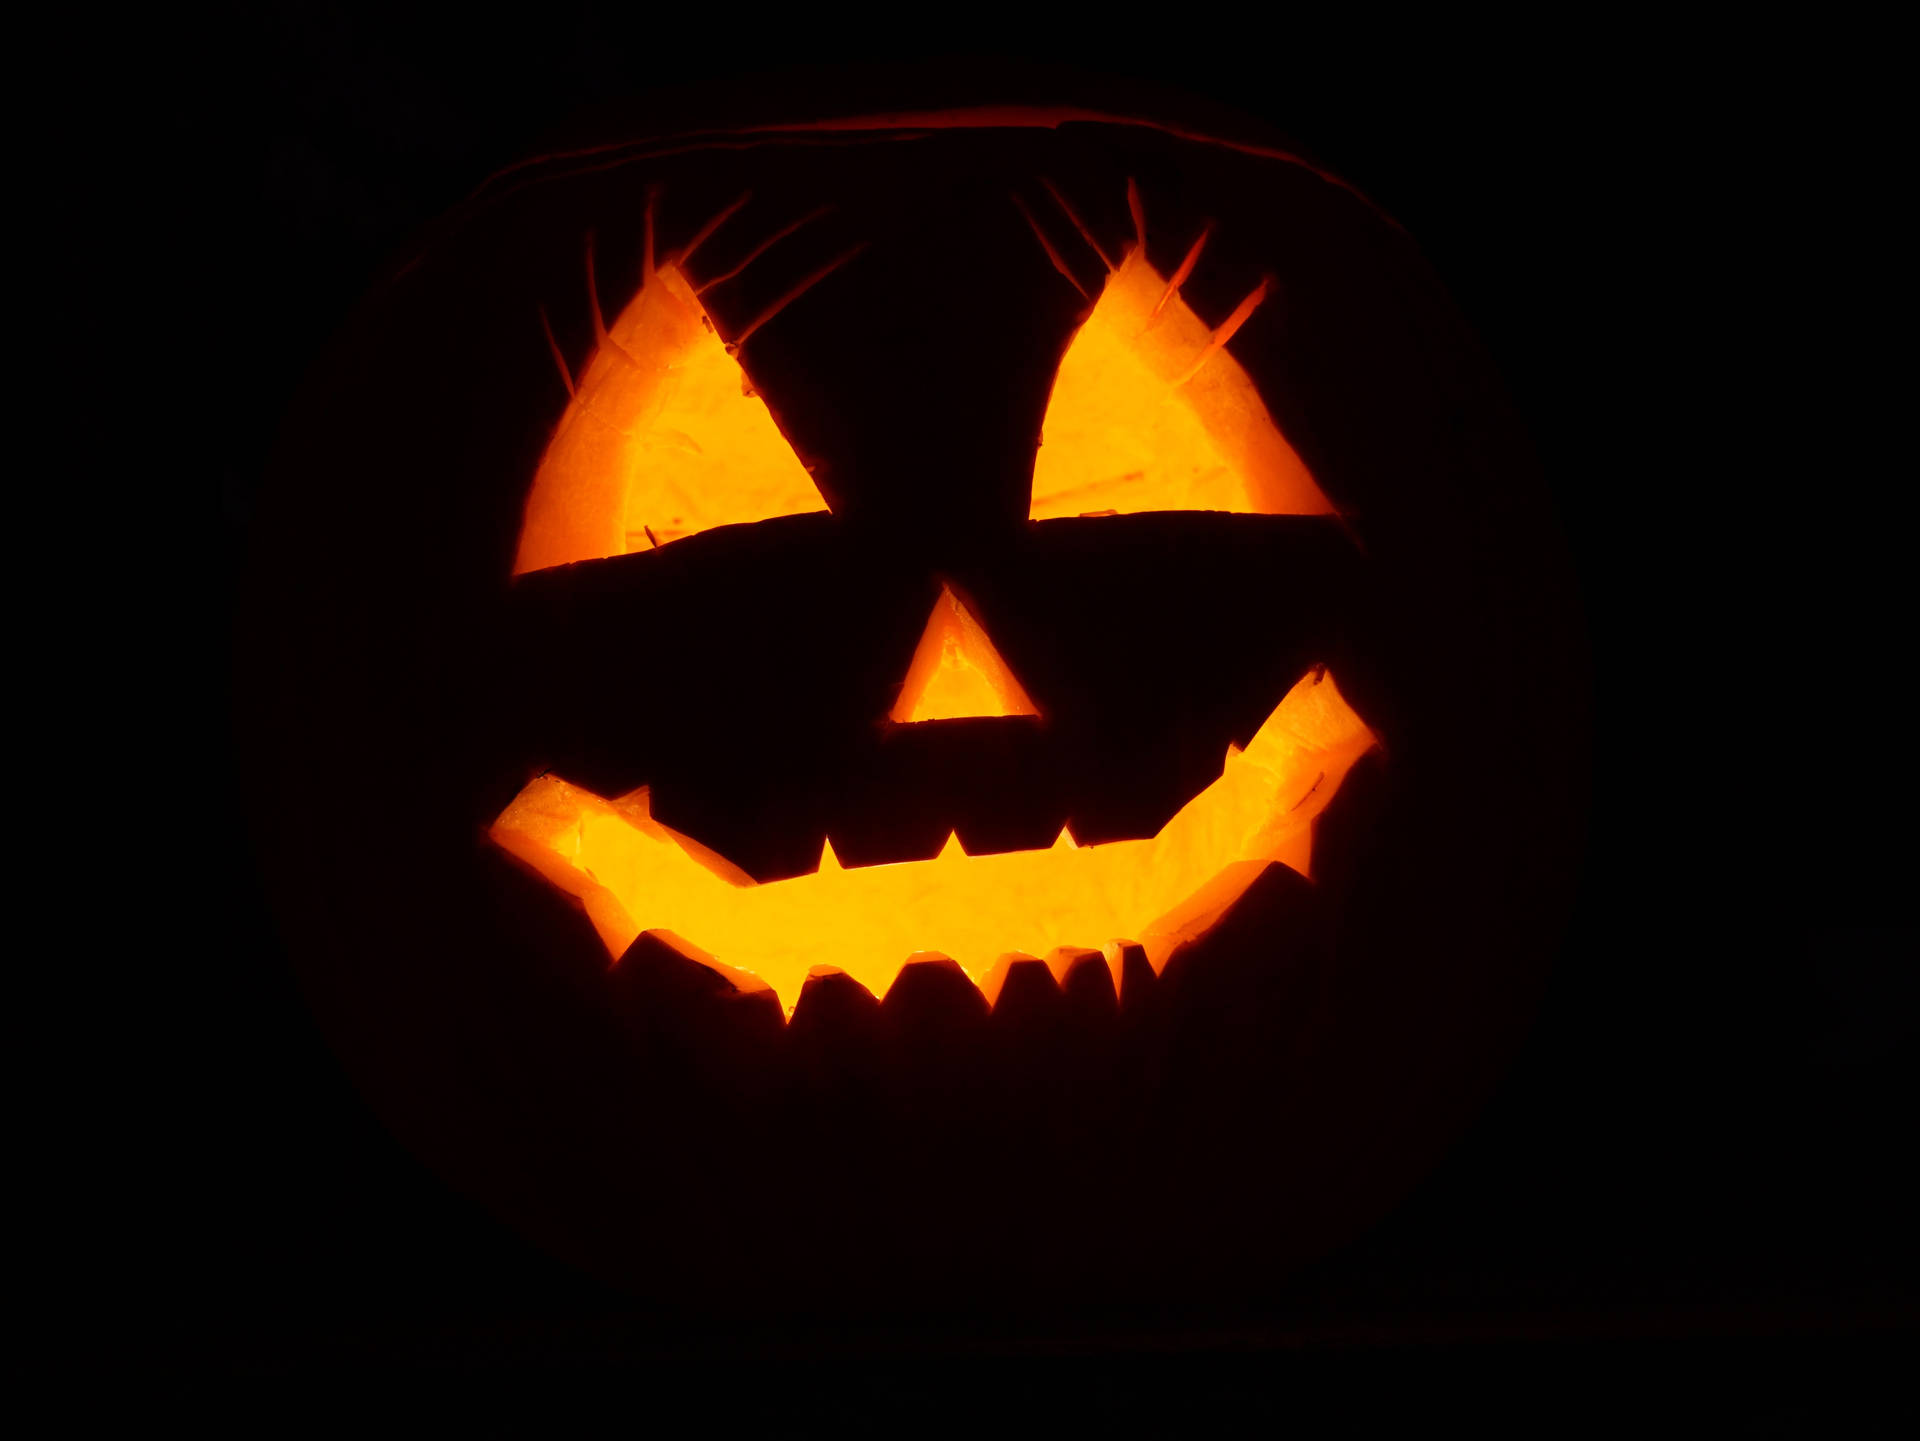 Black pumpkin on a dark room for Halloween all hallows eve,